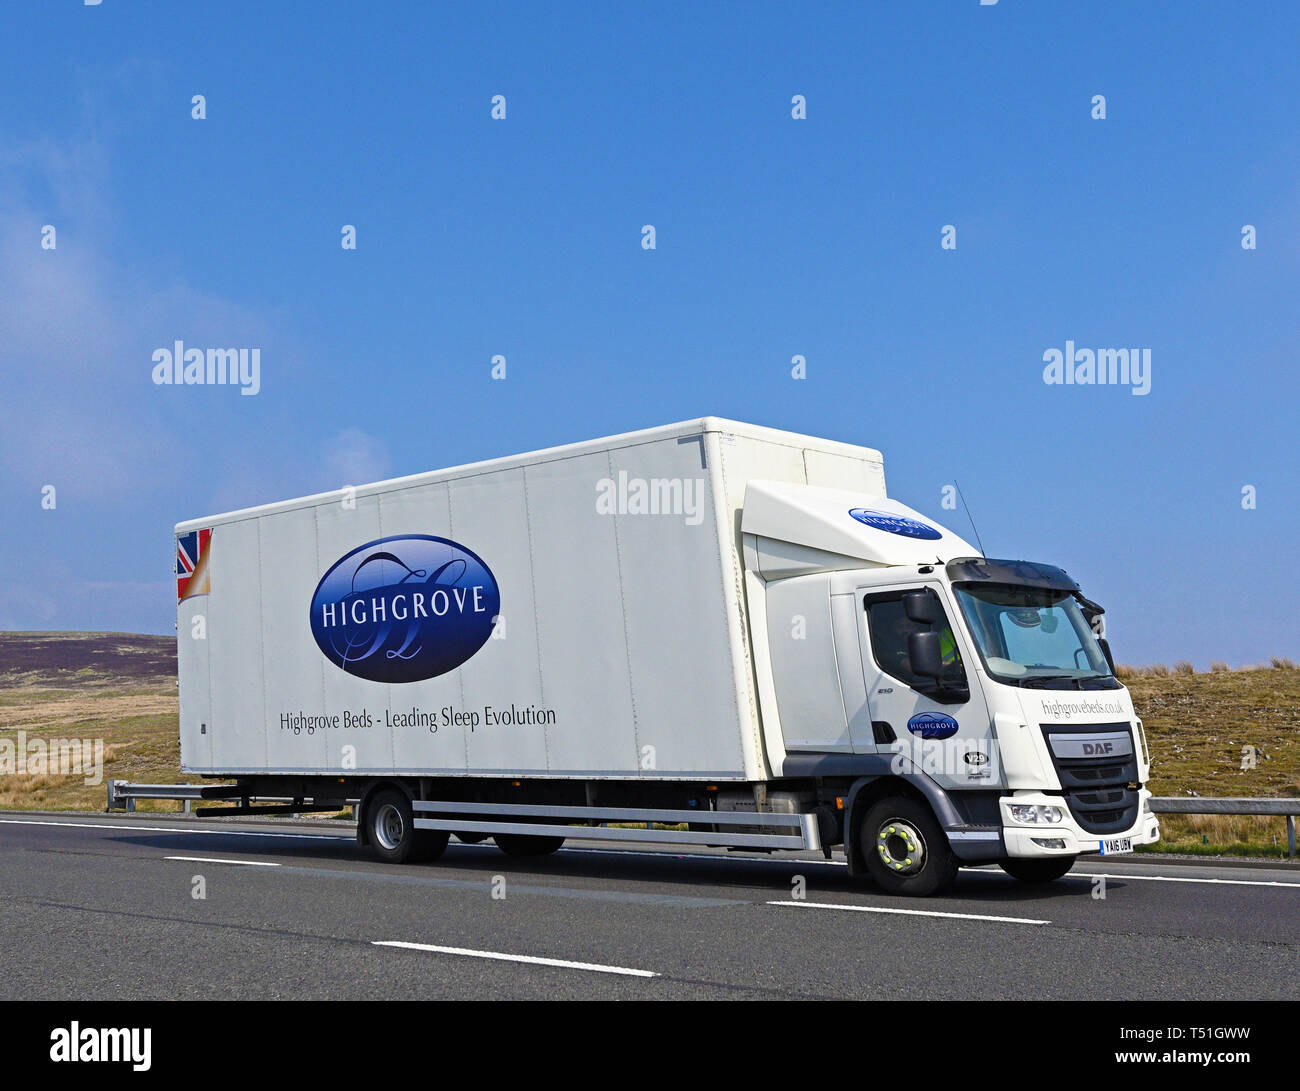 Highgrove letti - Leader di evoluzione del sonno, HGV. Autostrada M6, in direzione sud, Shap, Cumbria, England, Regno Unito, Europa. Foto Stock